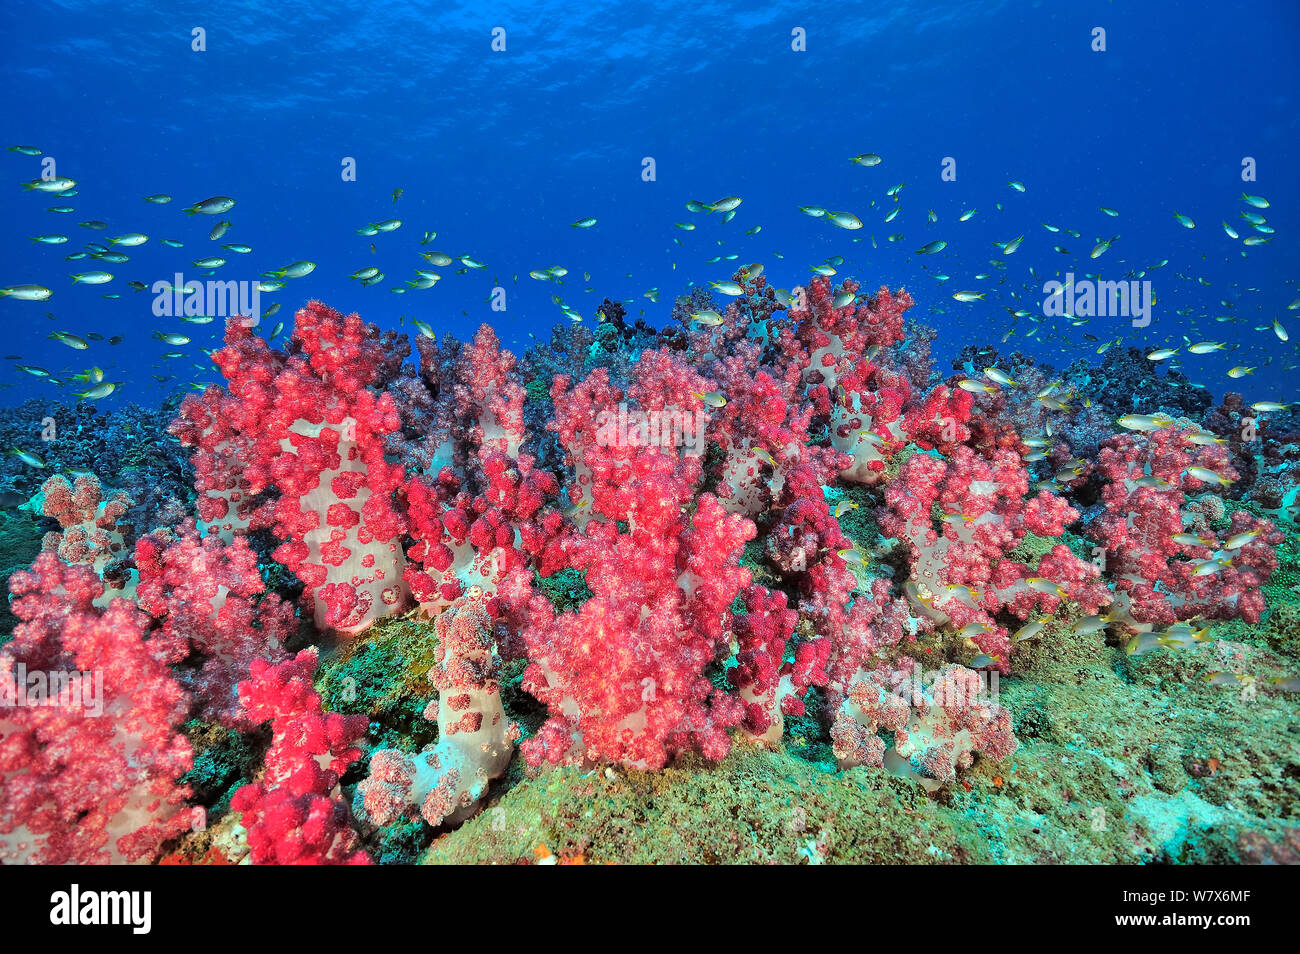 Reef recouvert de coraux mous (Dendronephthya) avec Ternate (chromis Chromis) ternatensis, côte du Dhofar et îles Hallaniyat, Oman. Mer d'Oman. Banque D'Images